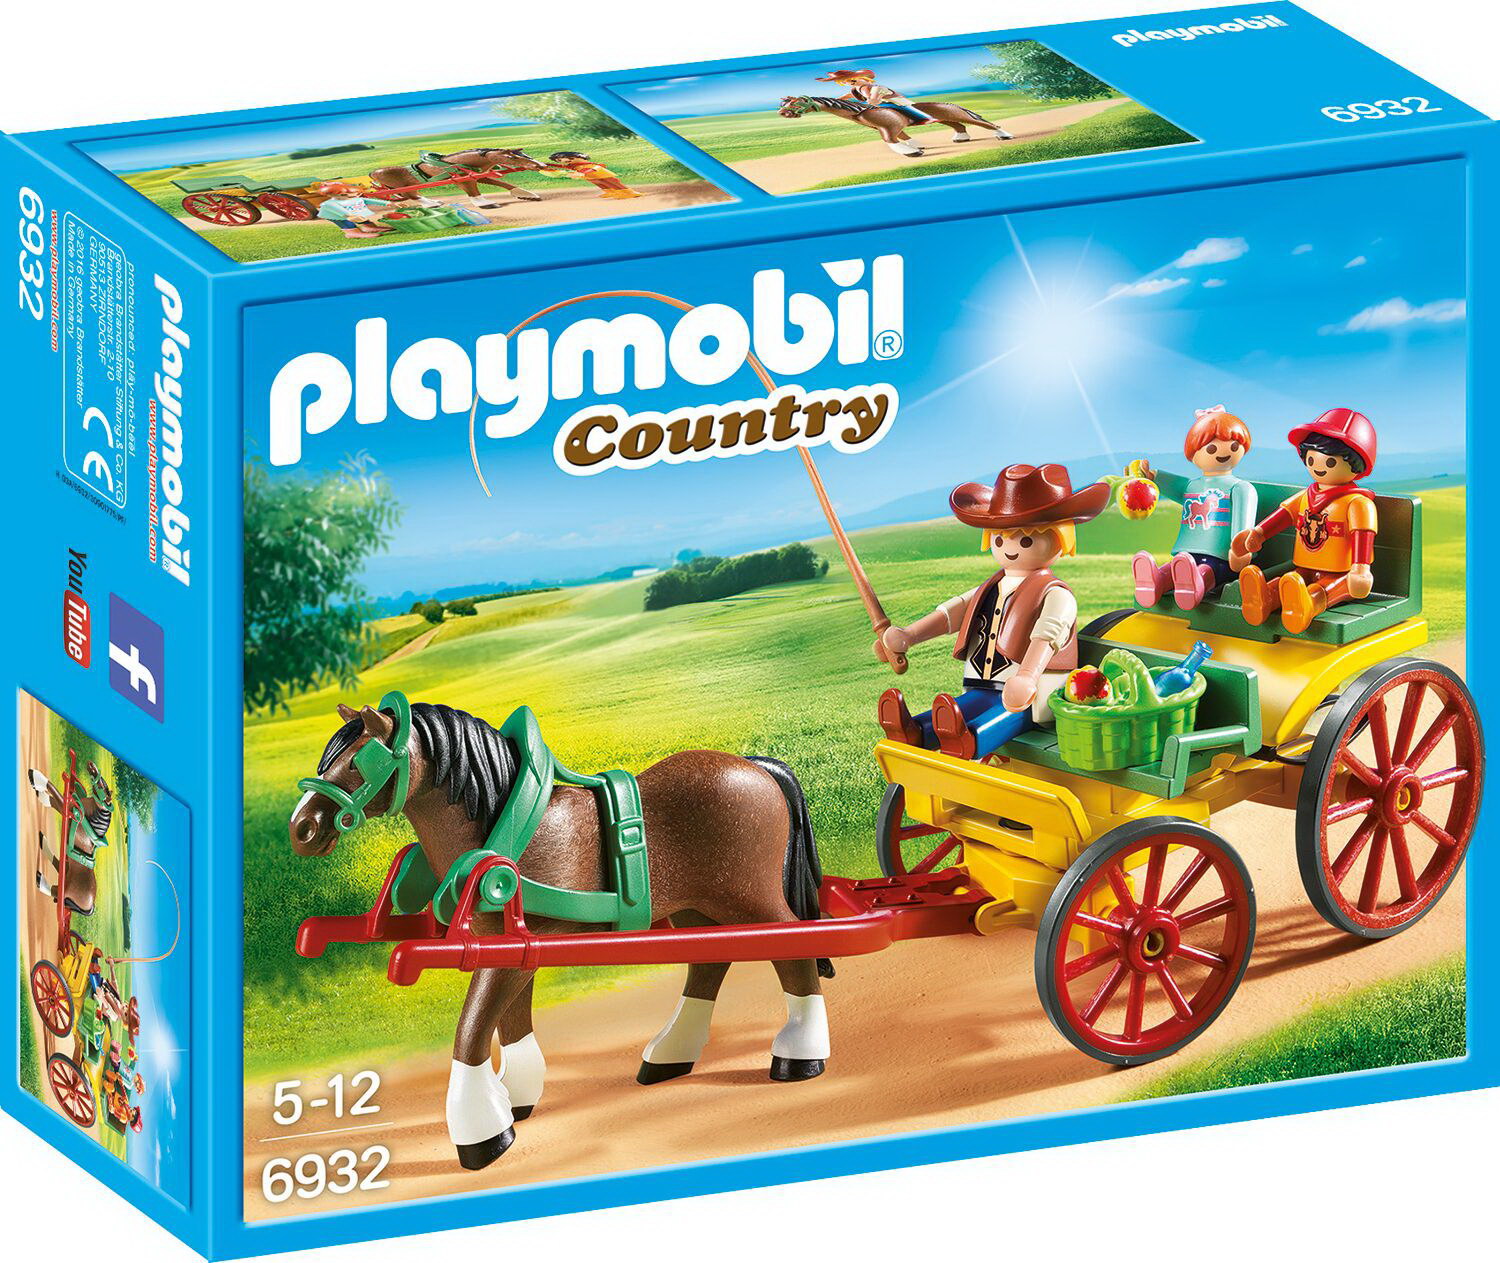 Playmobil 6932 - Pferdekutsche (Country)